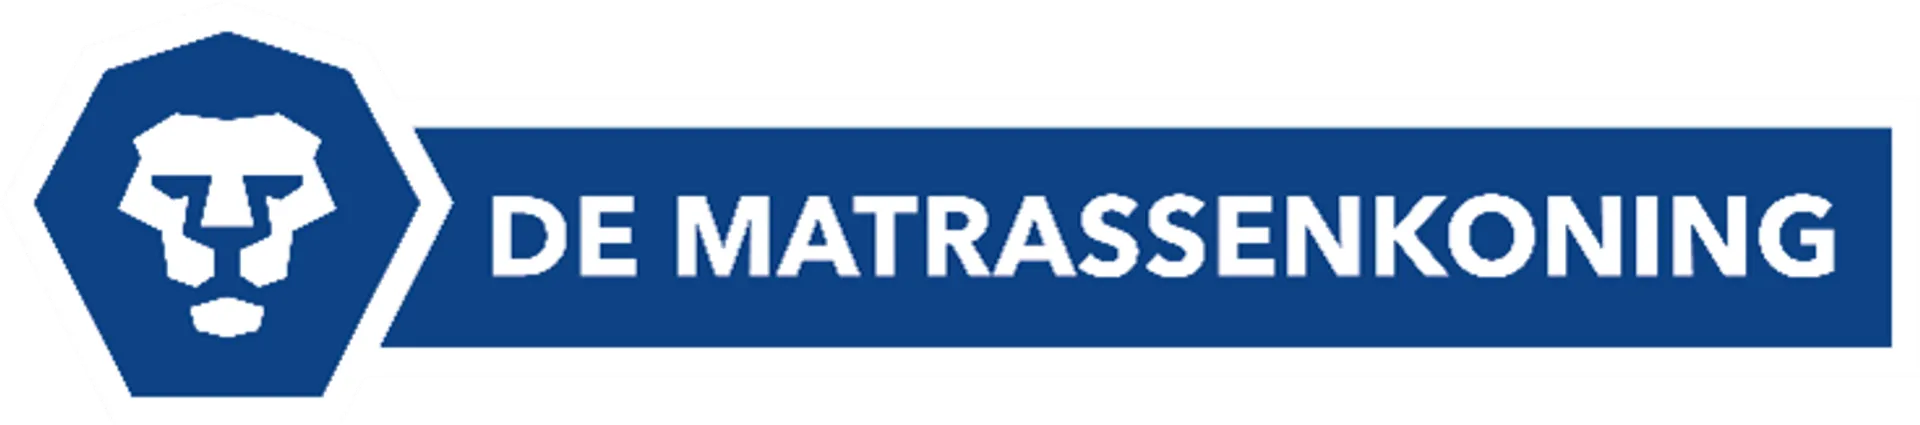 DE MATRASSENKONING logo